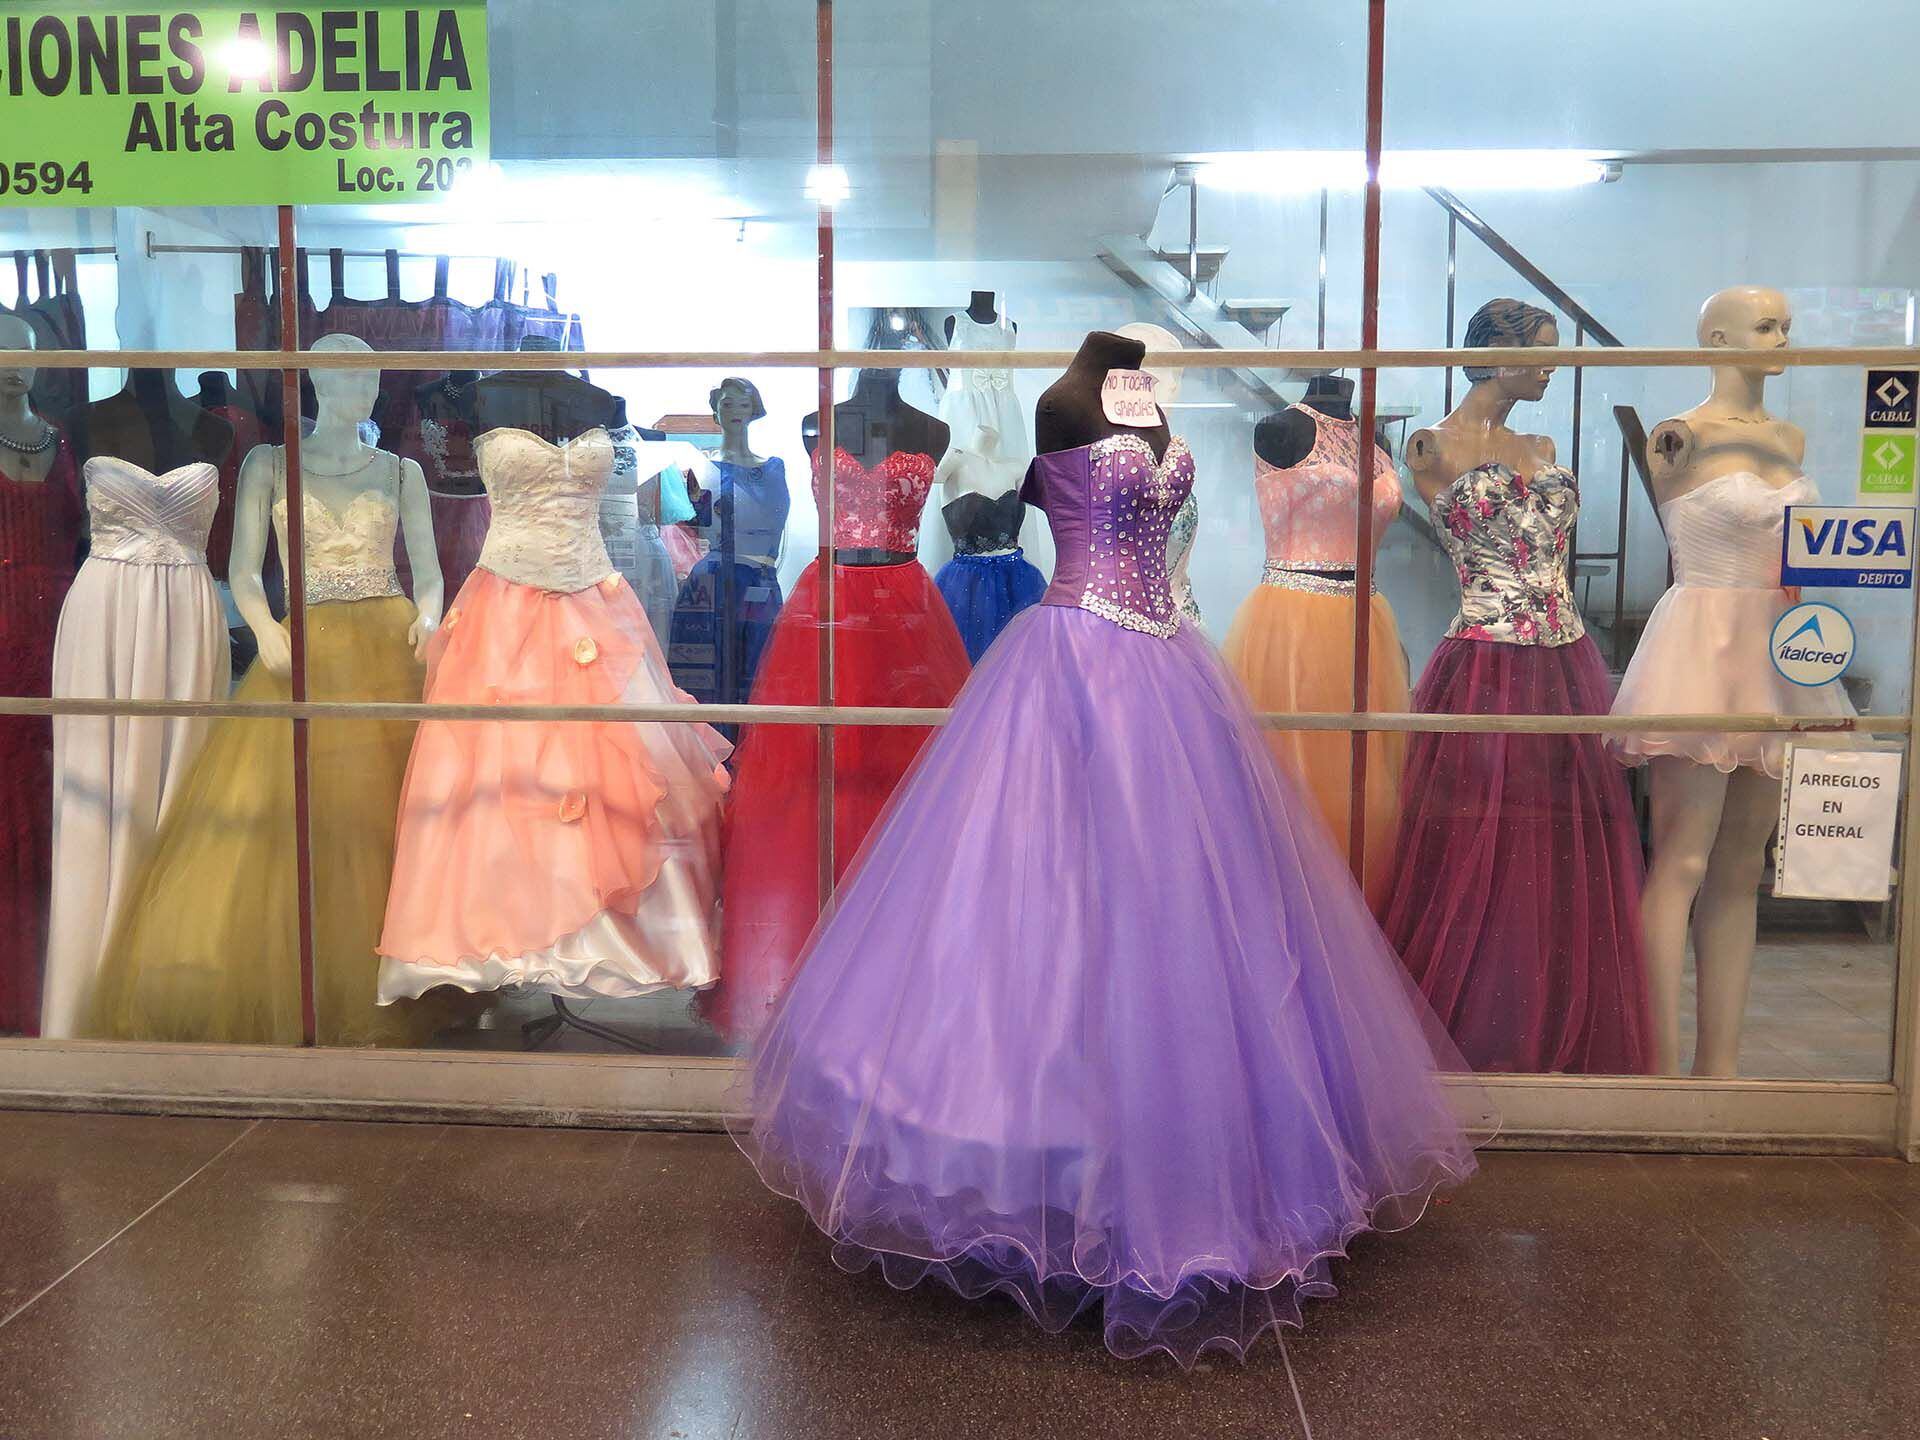 Alta costura según la lógica porteña: "Las típicas galerías de esa zona entre Congreso, Balvanera y Once en donde hay negocios de venta de vestidos de novias, madrinas, quinceañeras"